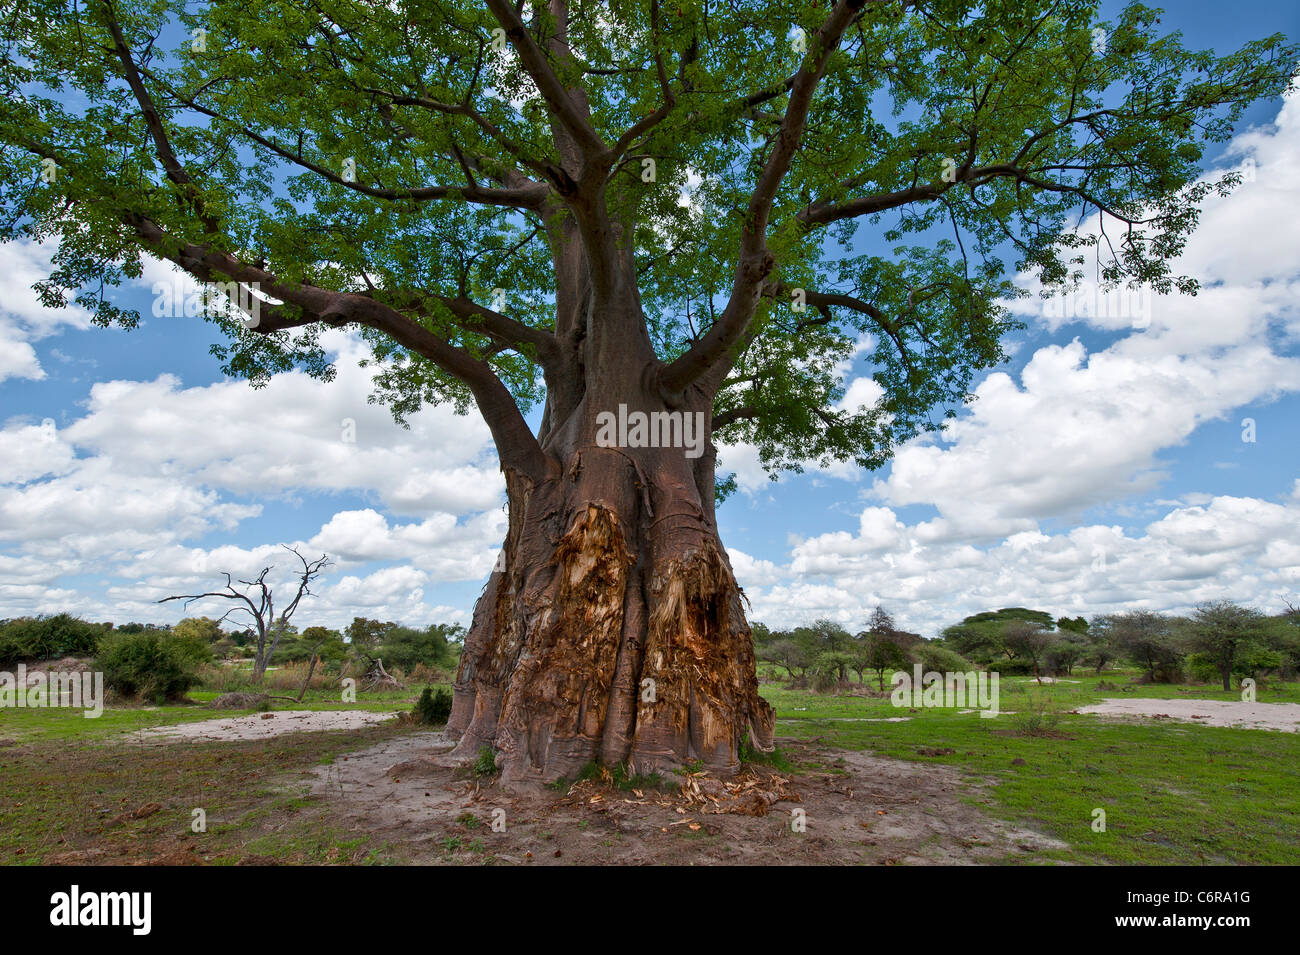 Baobab tree showing damage from elephants Stock Photo